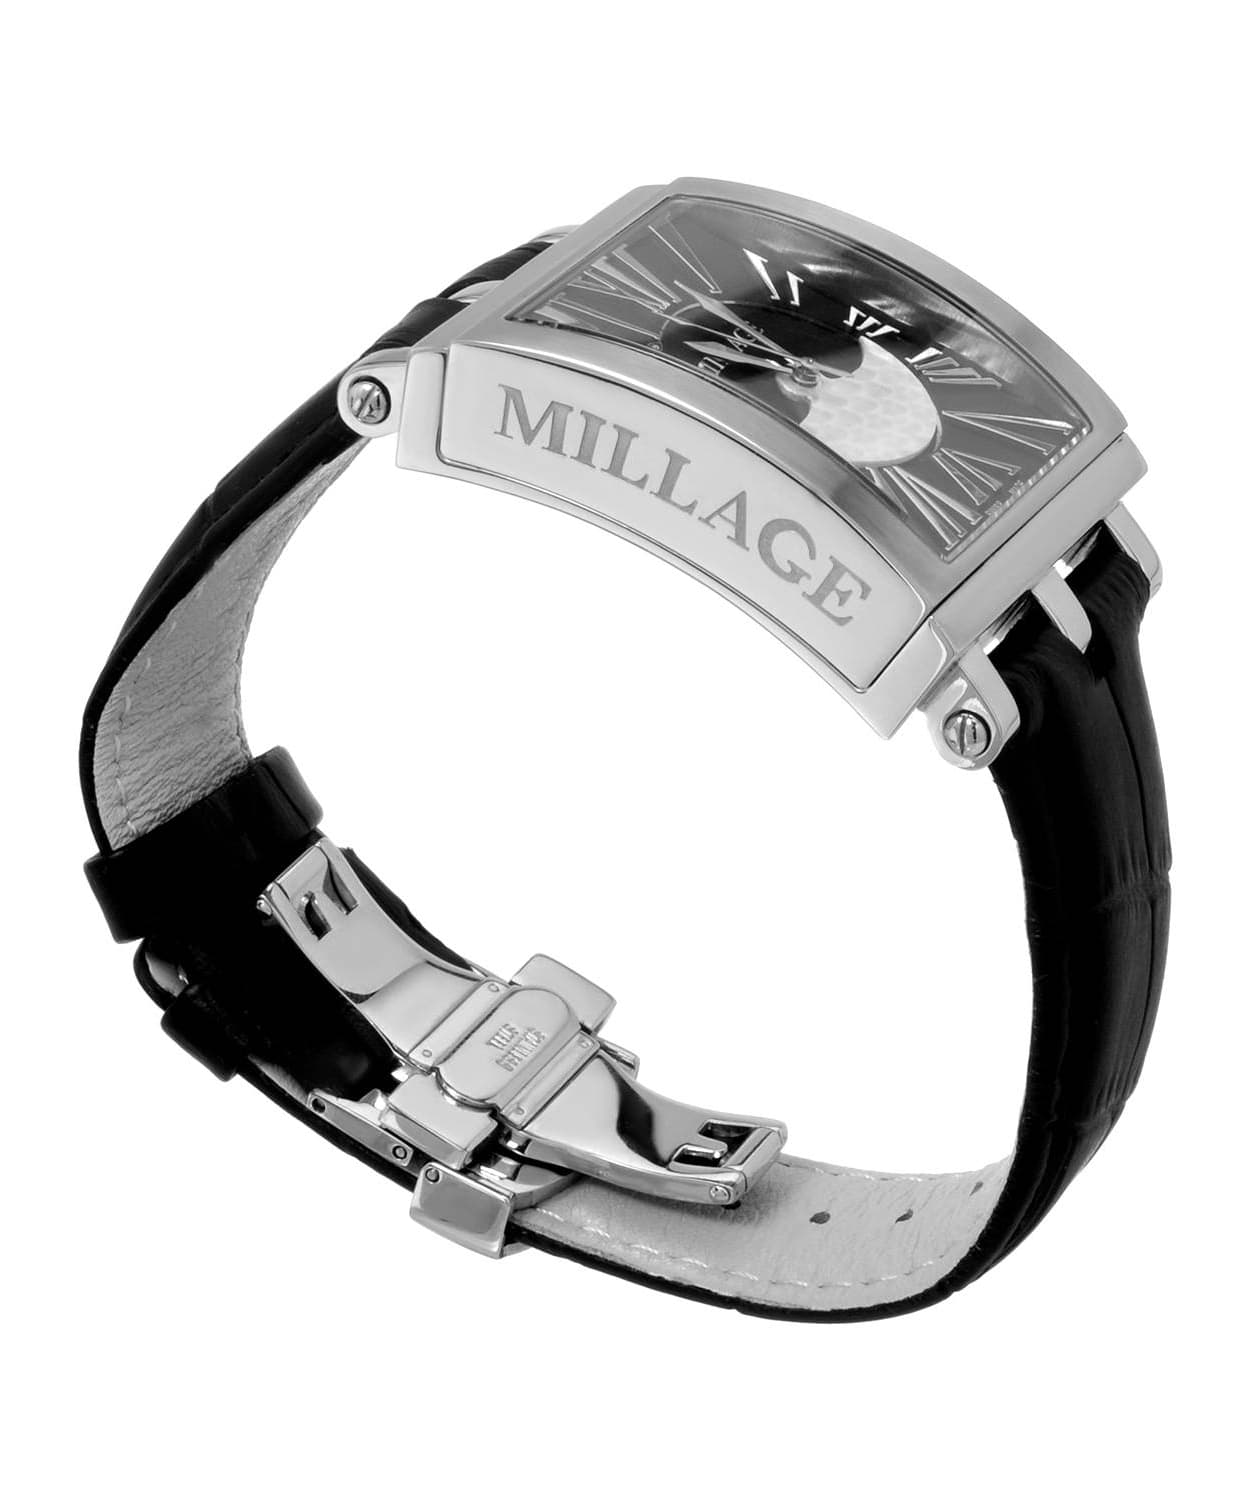 Millage Evreux Collection Model M4326 Watch - Swiss Quartz Movement View 2